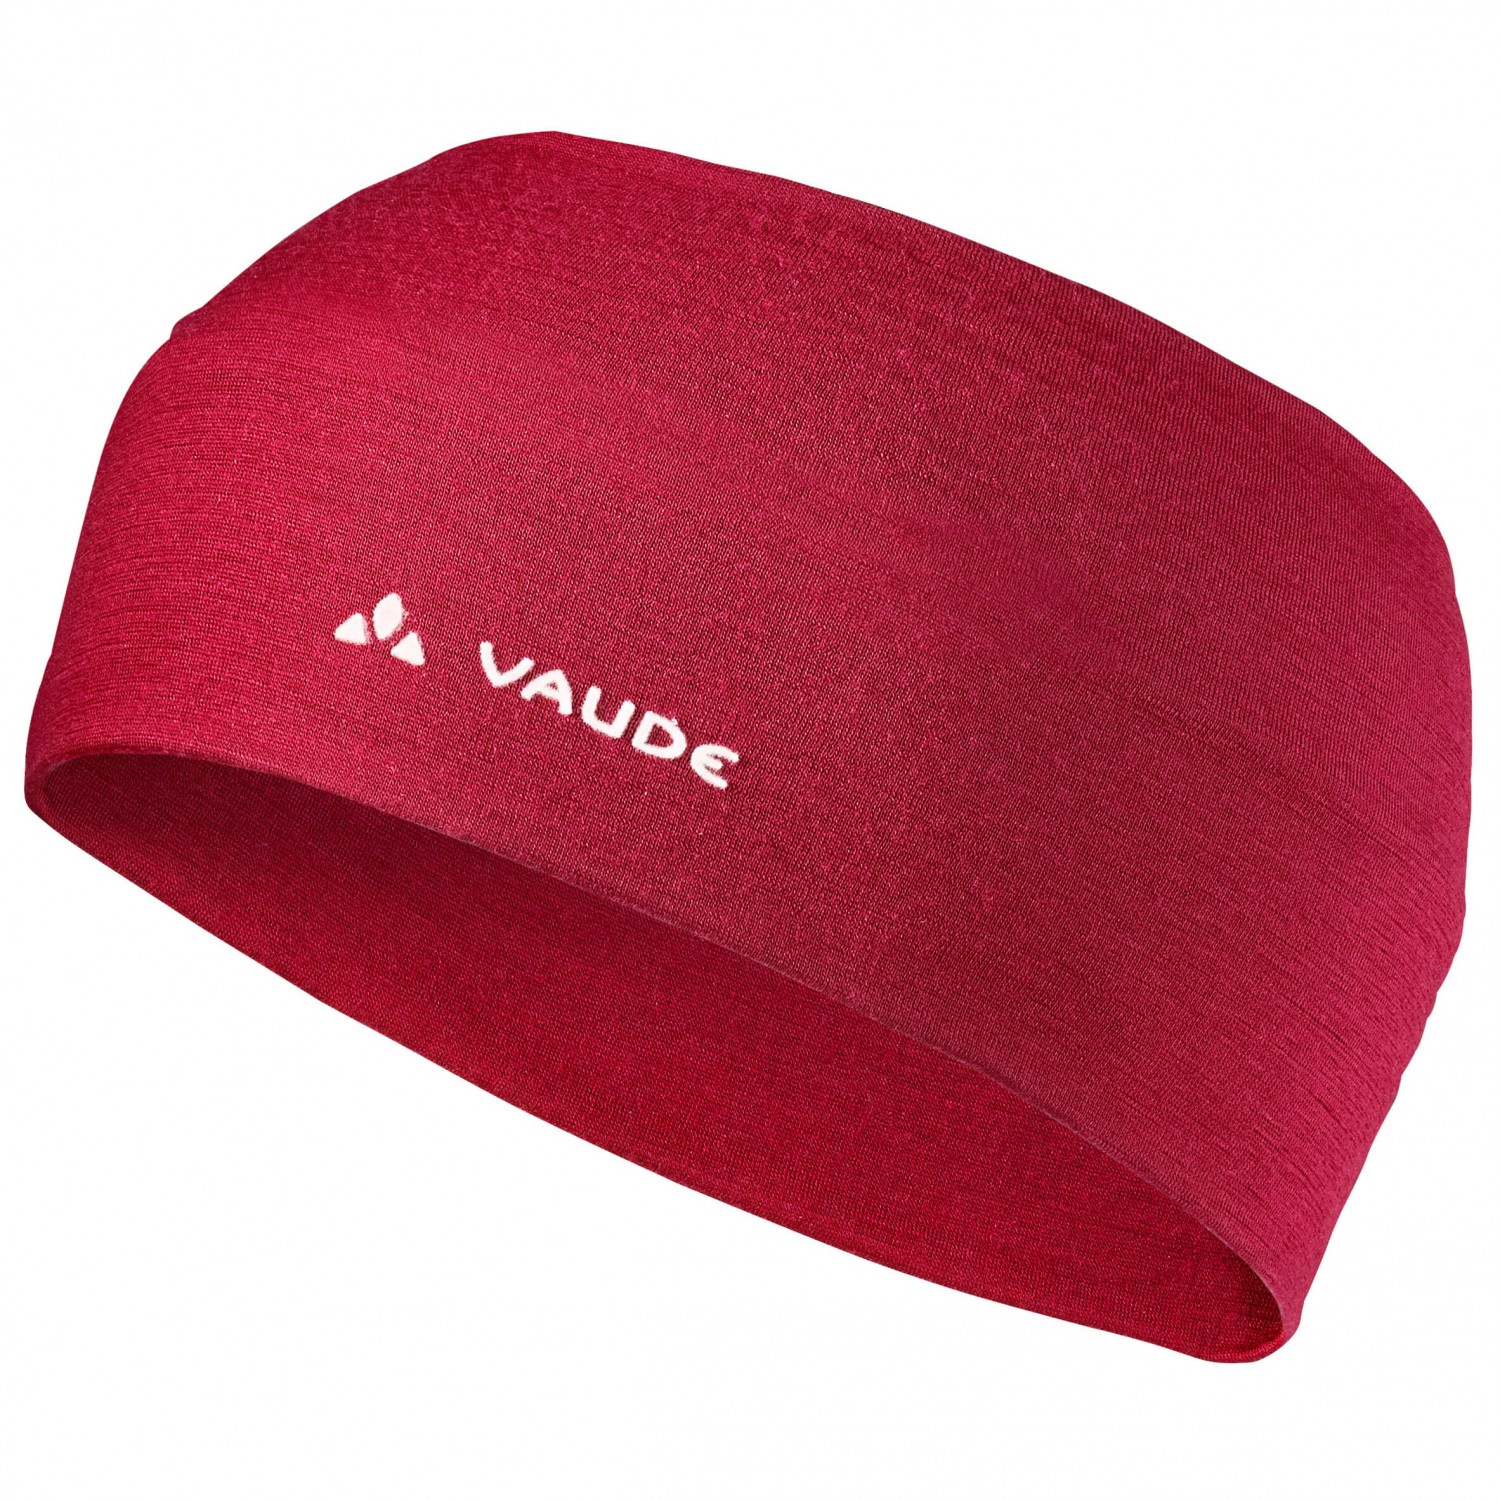 Повязка на голову Vaude Cassons Merino Headband, цвет Dark Indian Red повязка karakal headband navy